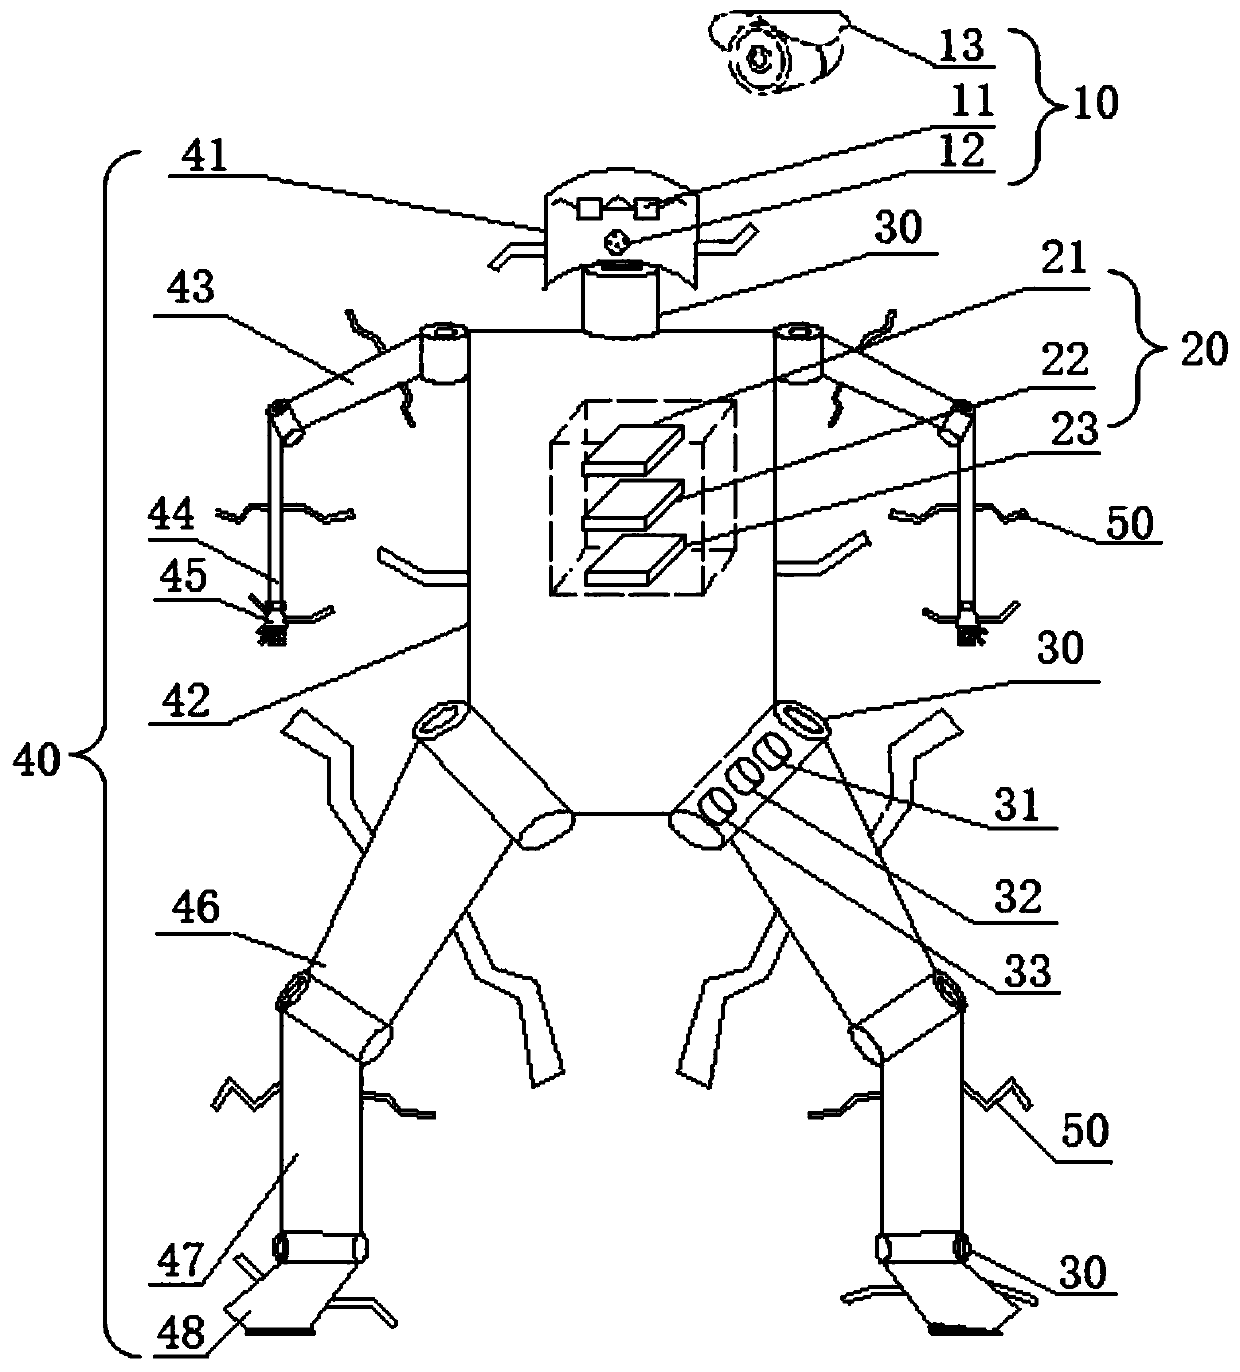 A remote exoskeleton teaching robot